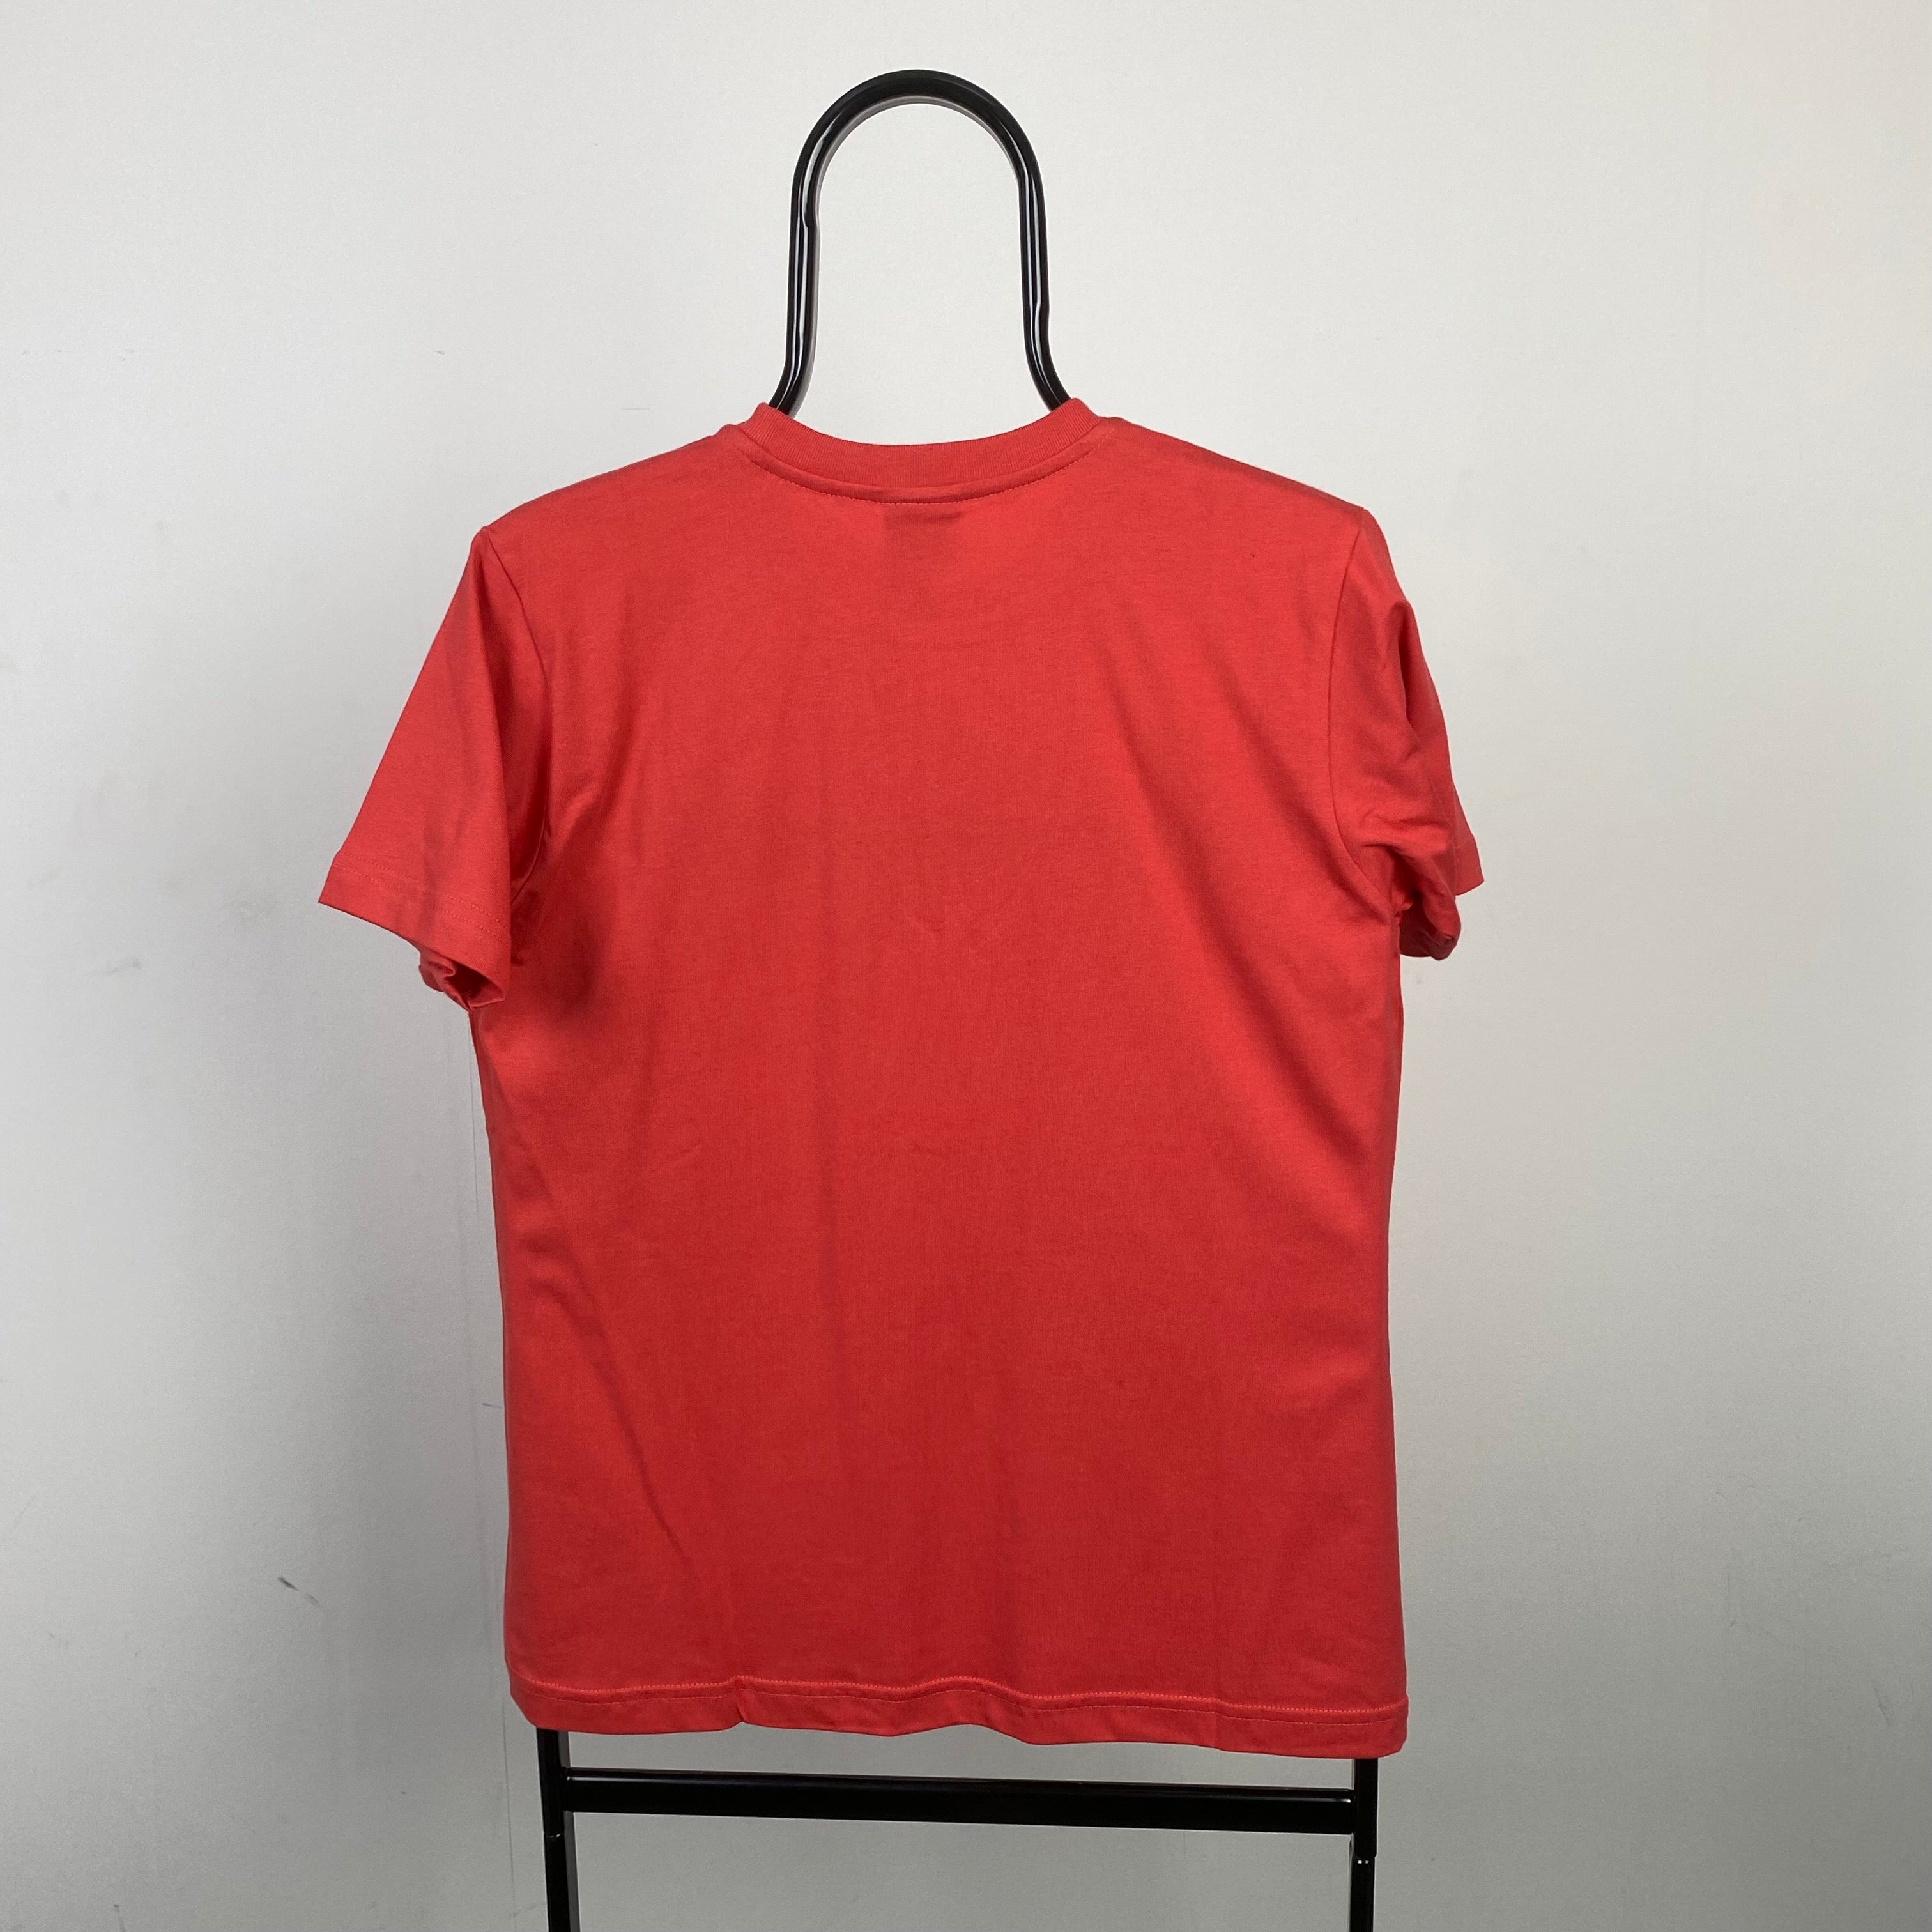 Vintage Nike T-Shirt Red Large/Medium